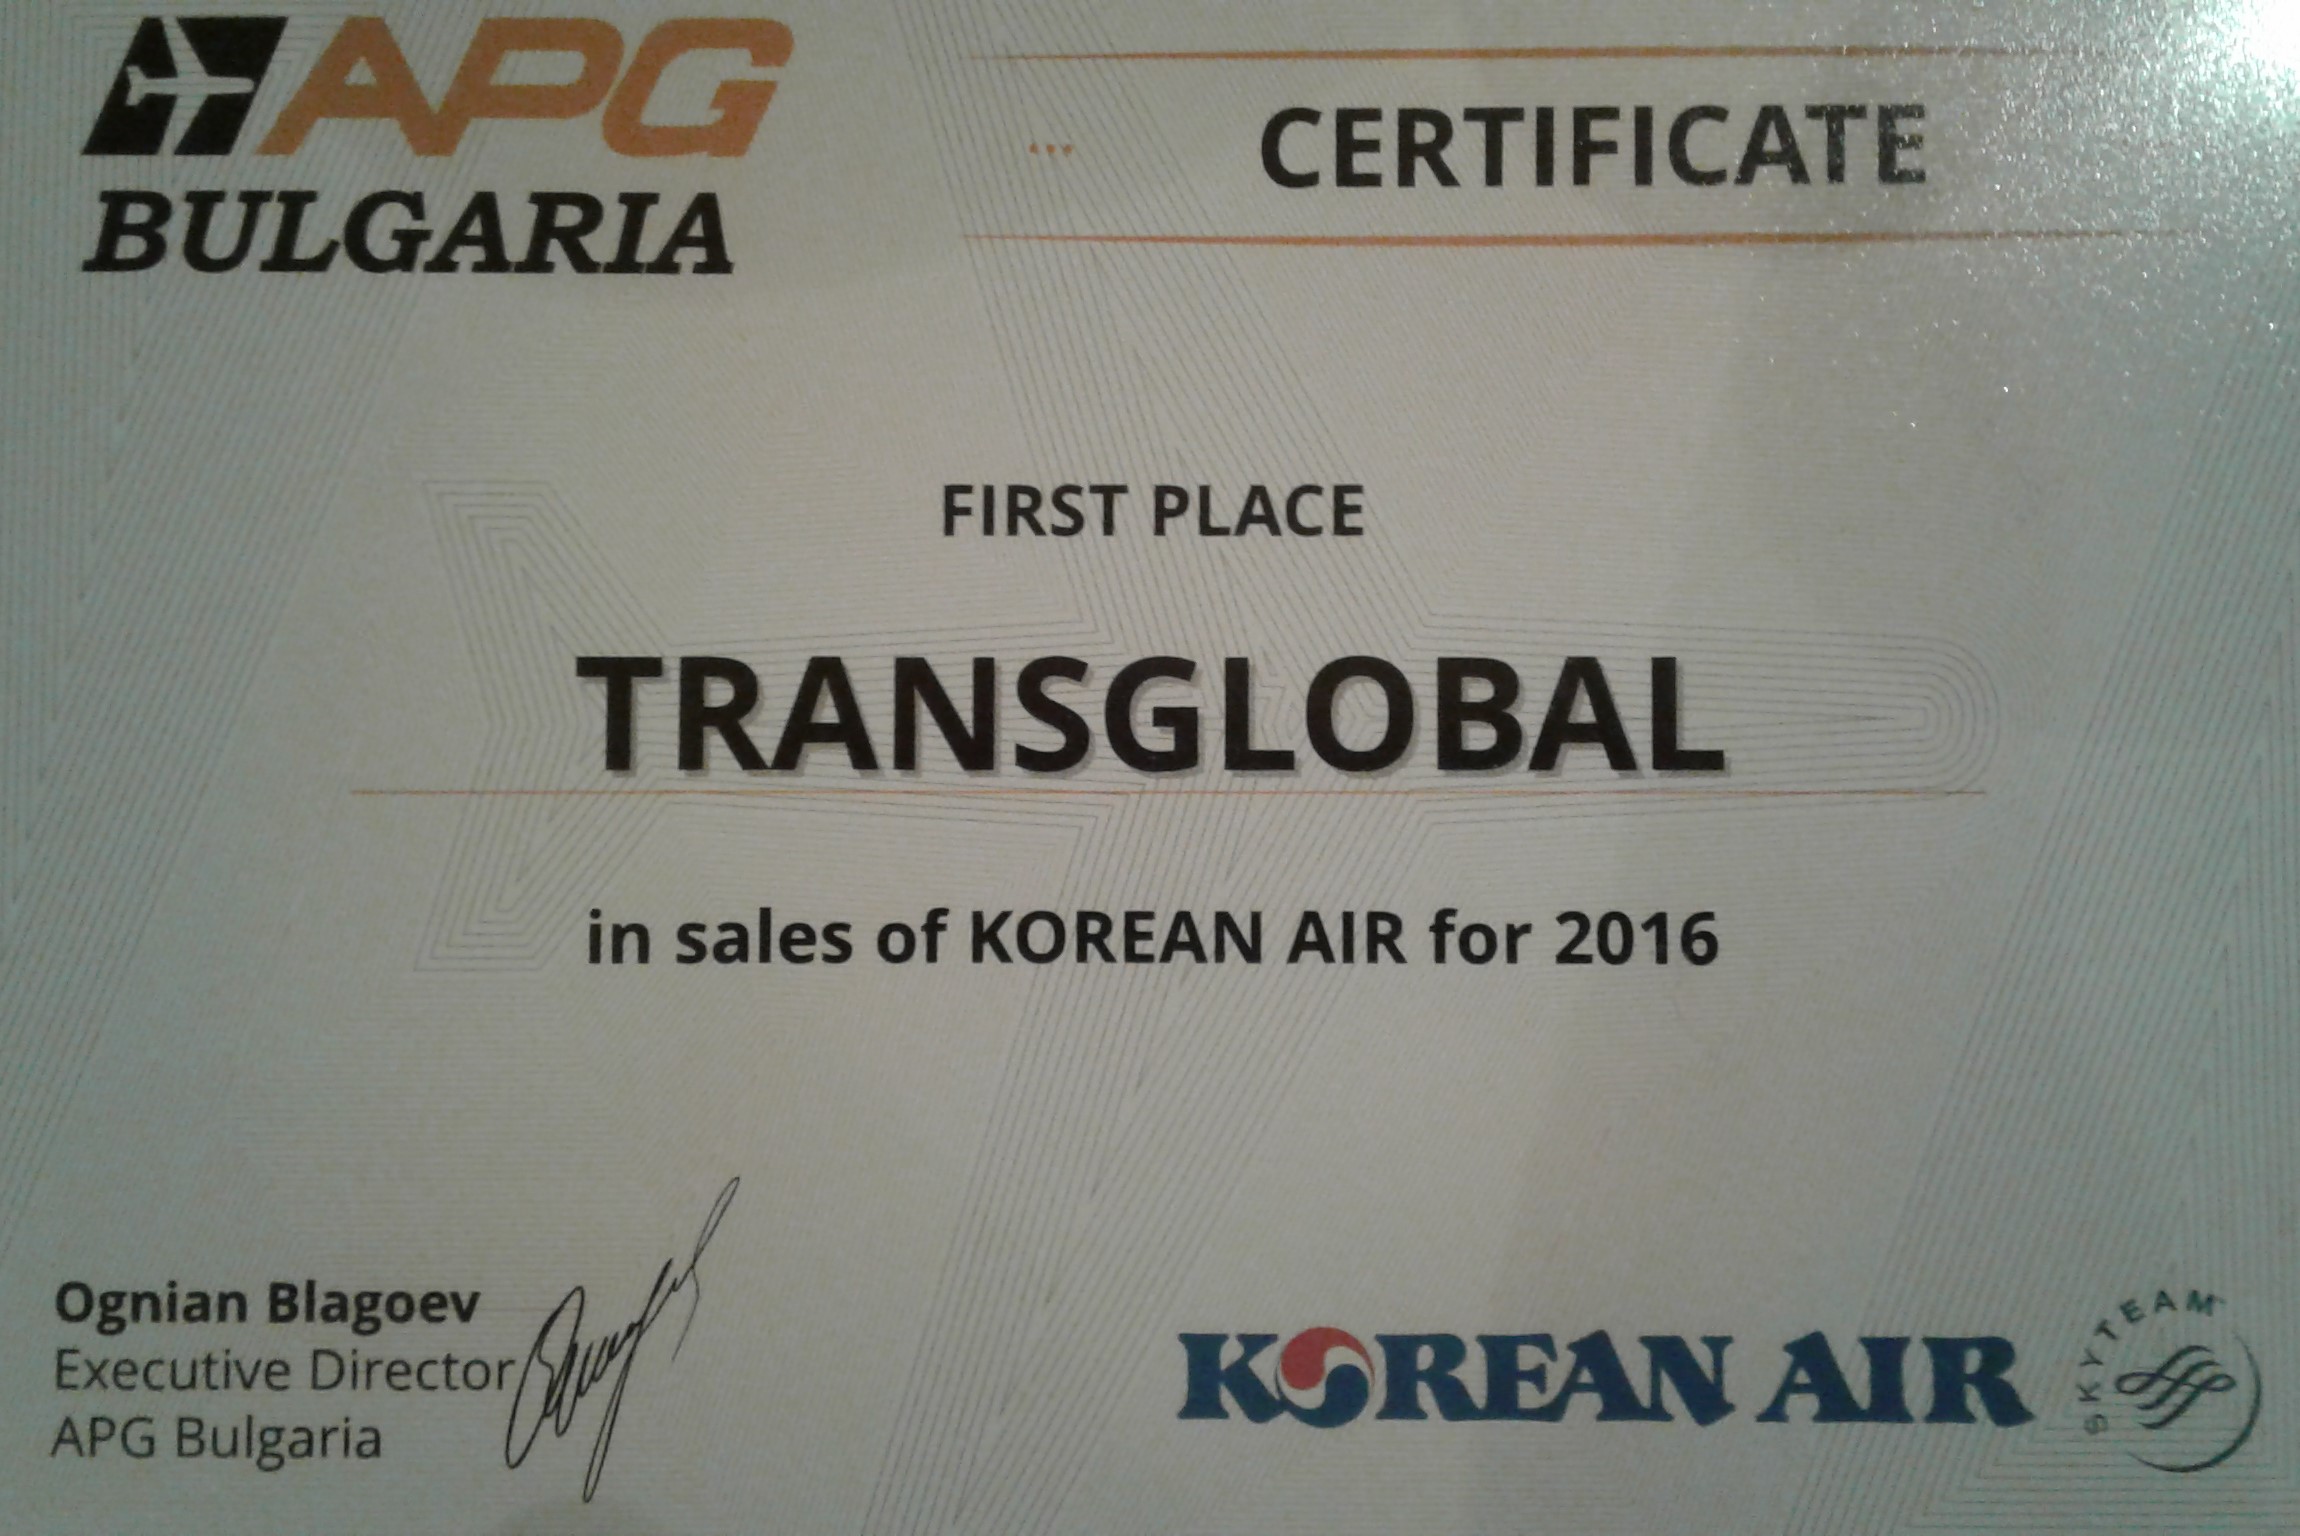 Korean Air Certificate